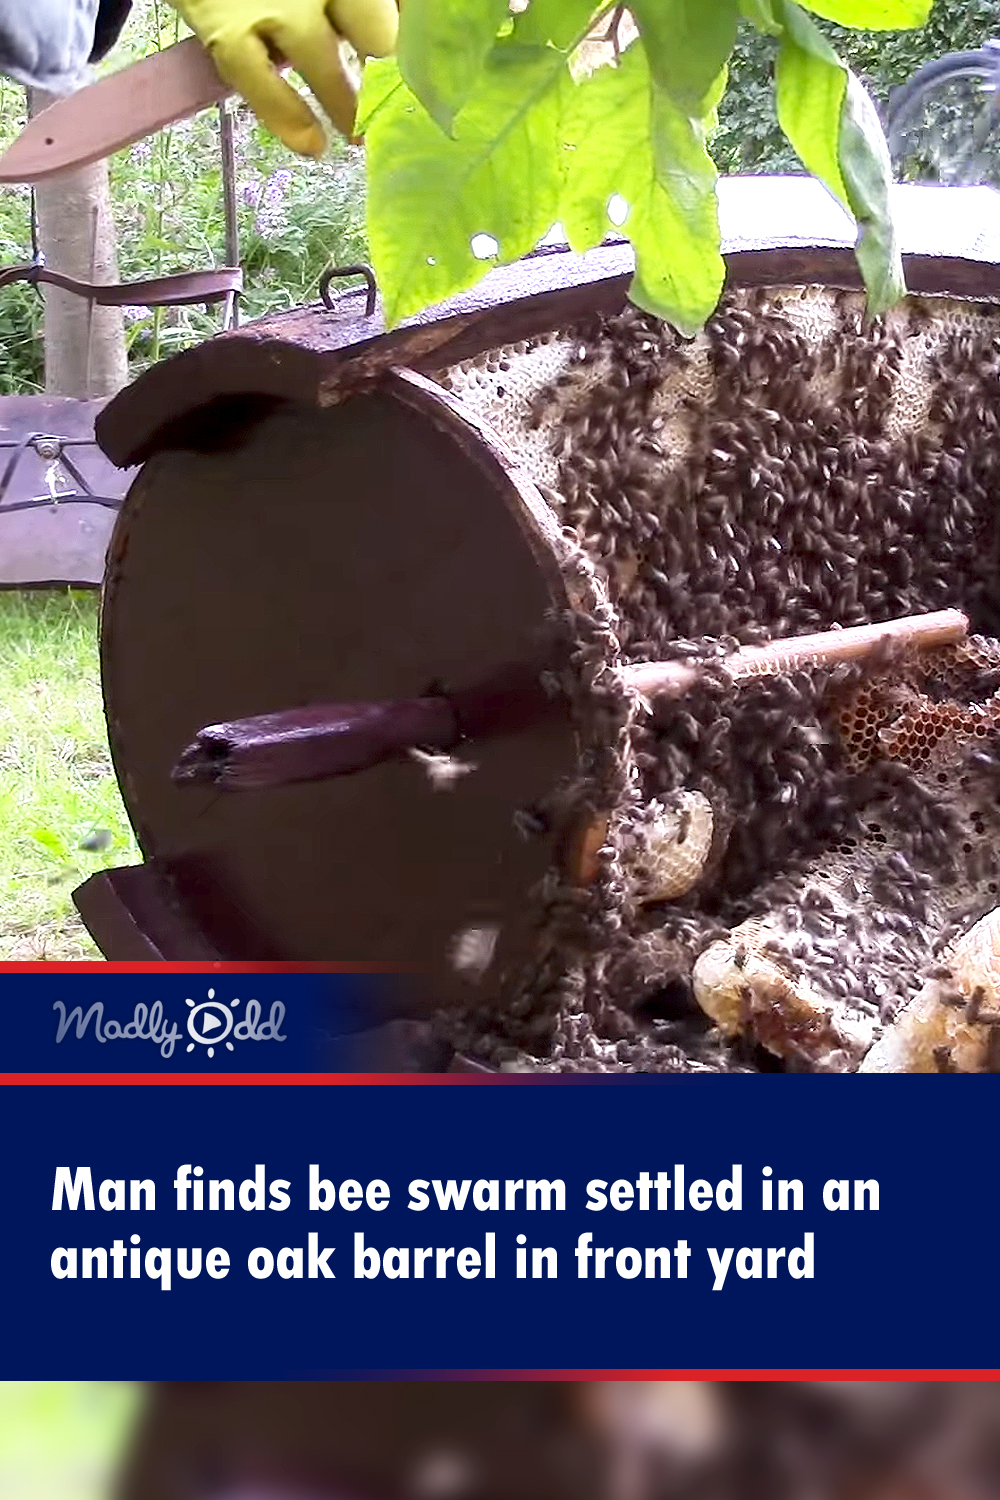 Man finds bee swarm settled in an antique oak barrel in front yard